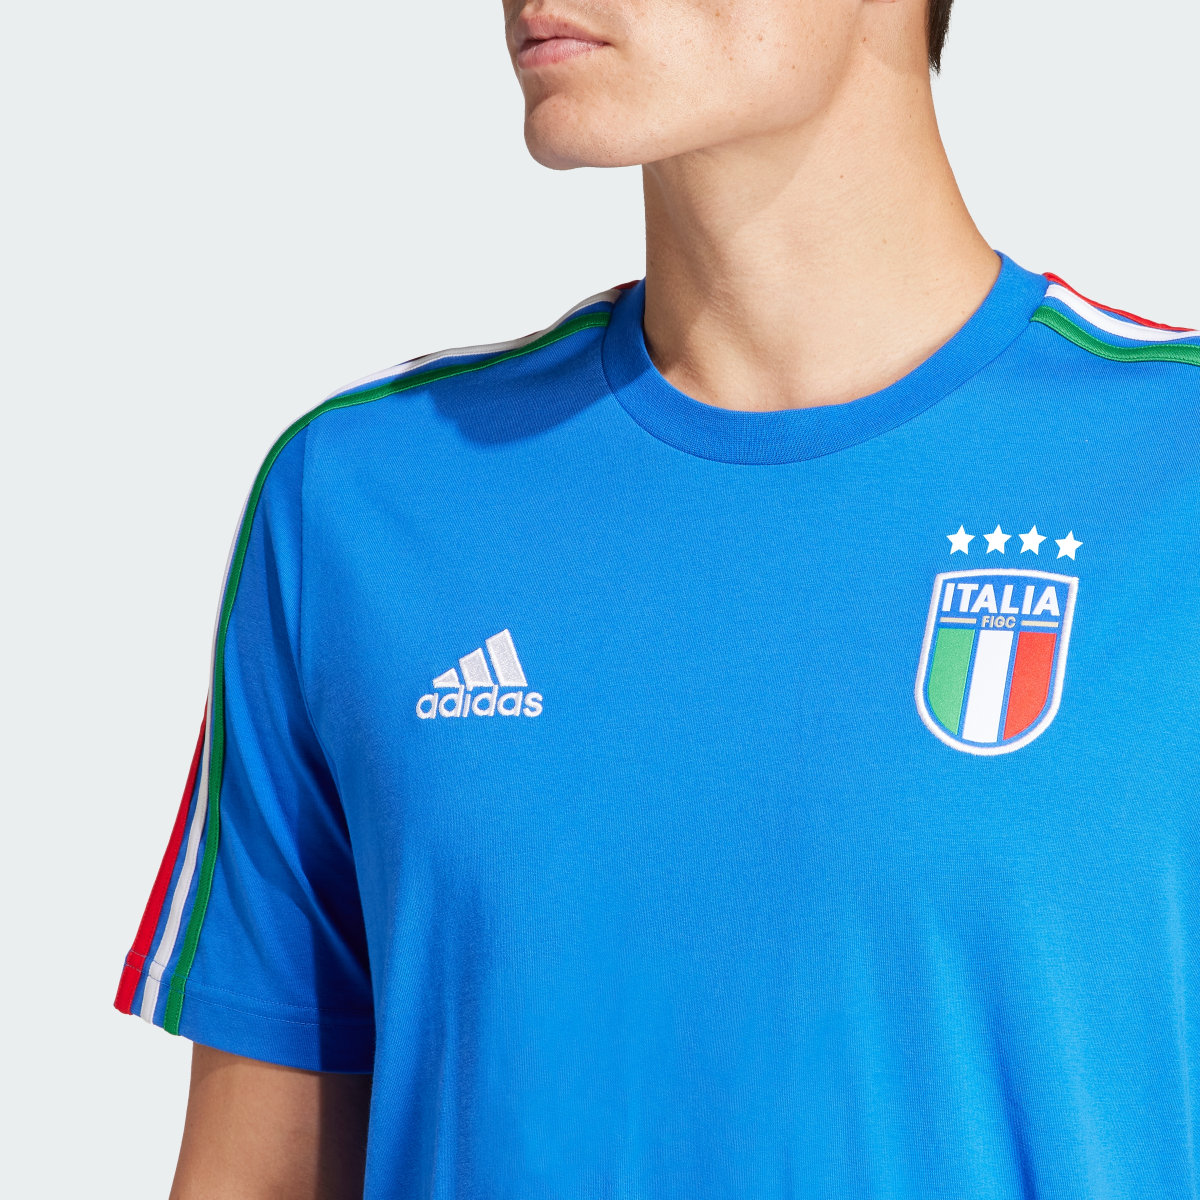 Adidas Camiseta Italia DNA 3 bandas. 7